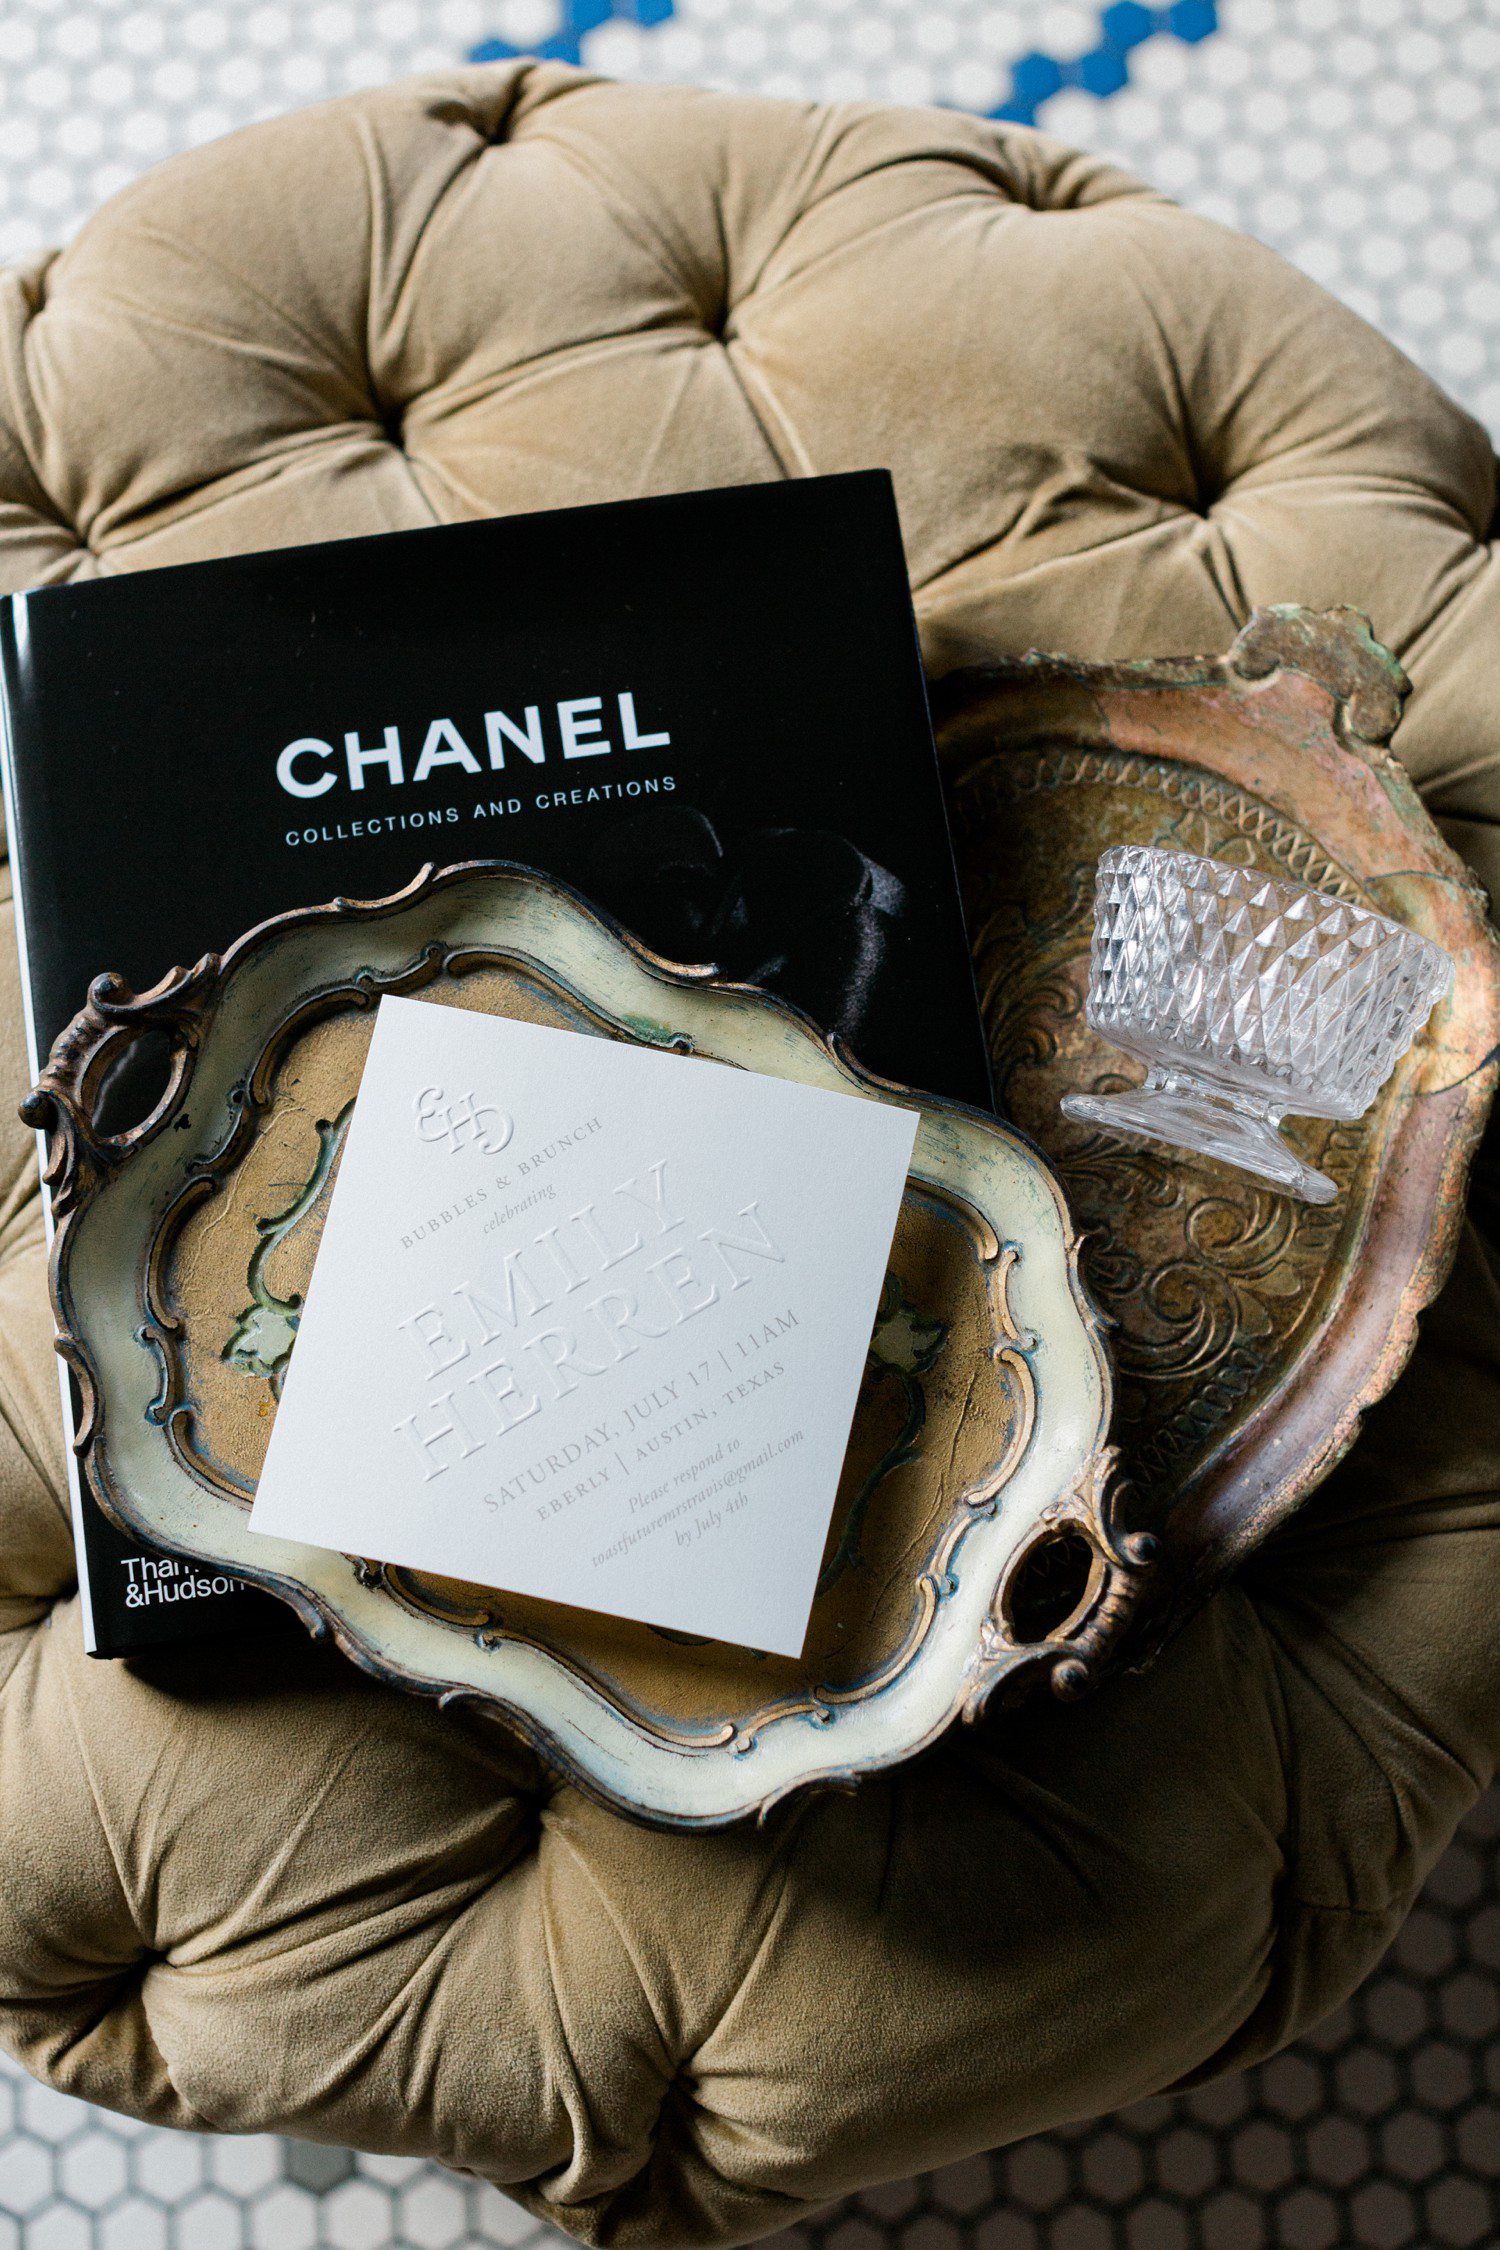 Champagne & Chanel Invite